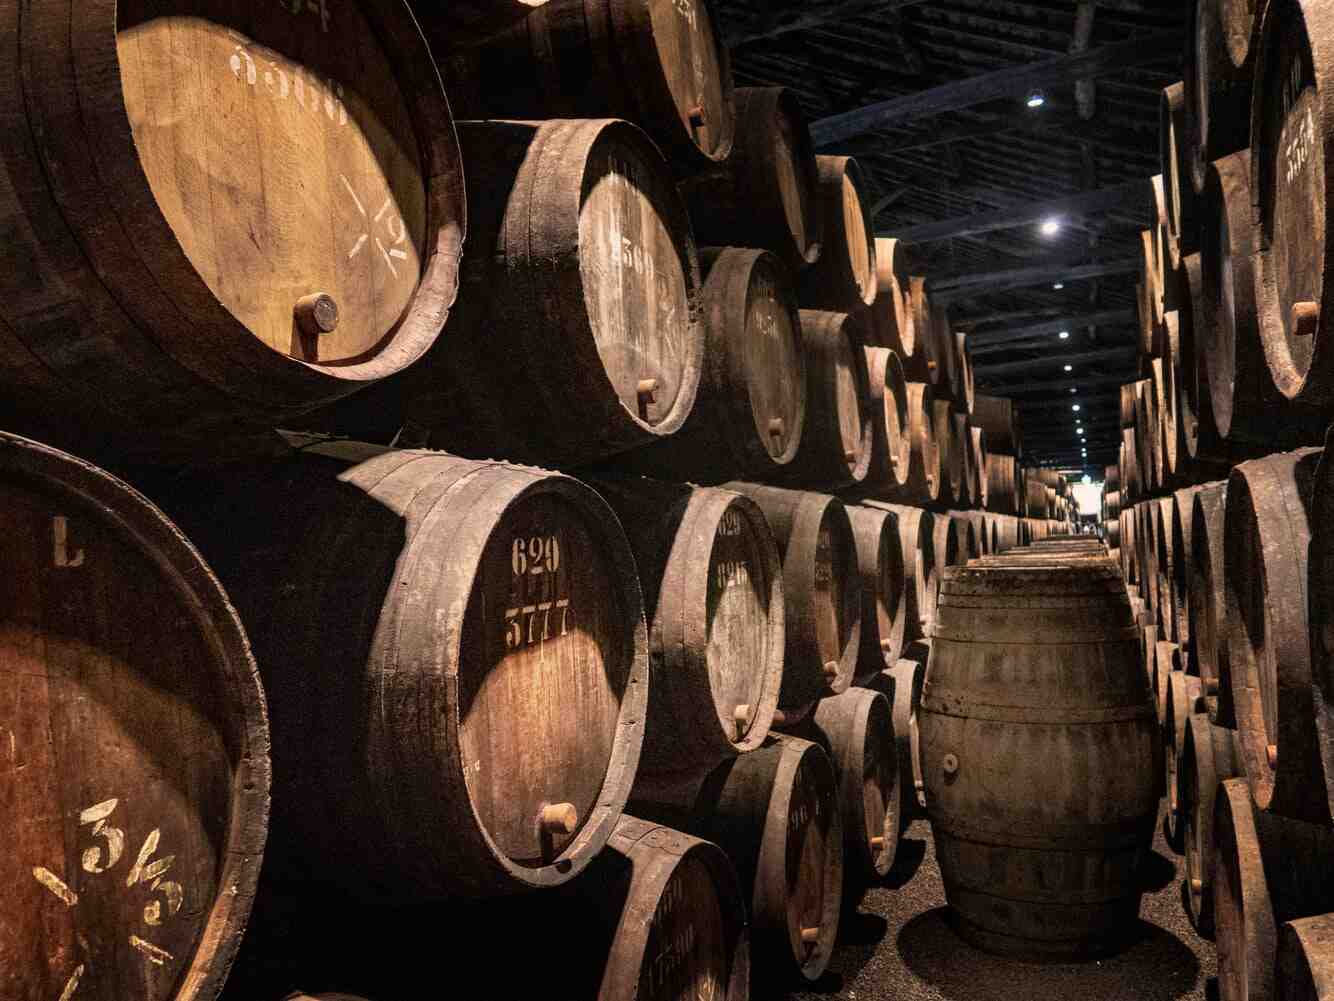 Comment le vin est-il conservé dans une cave à vin?